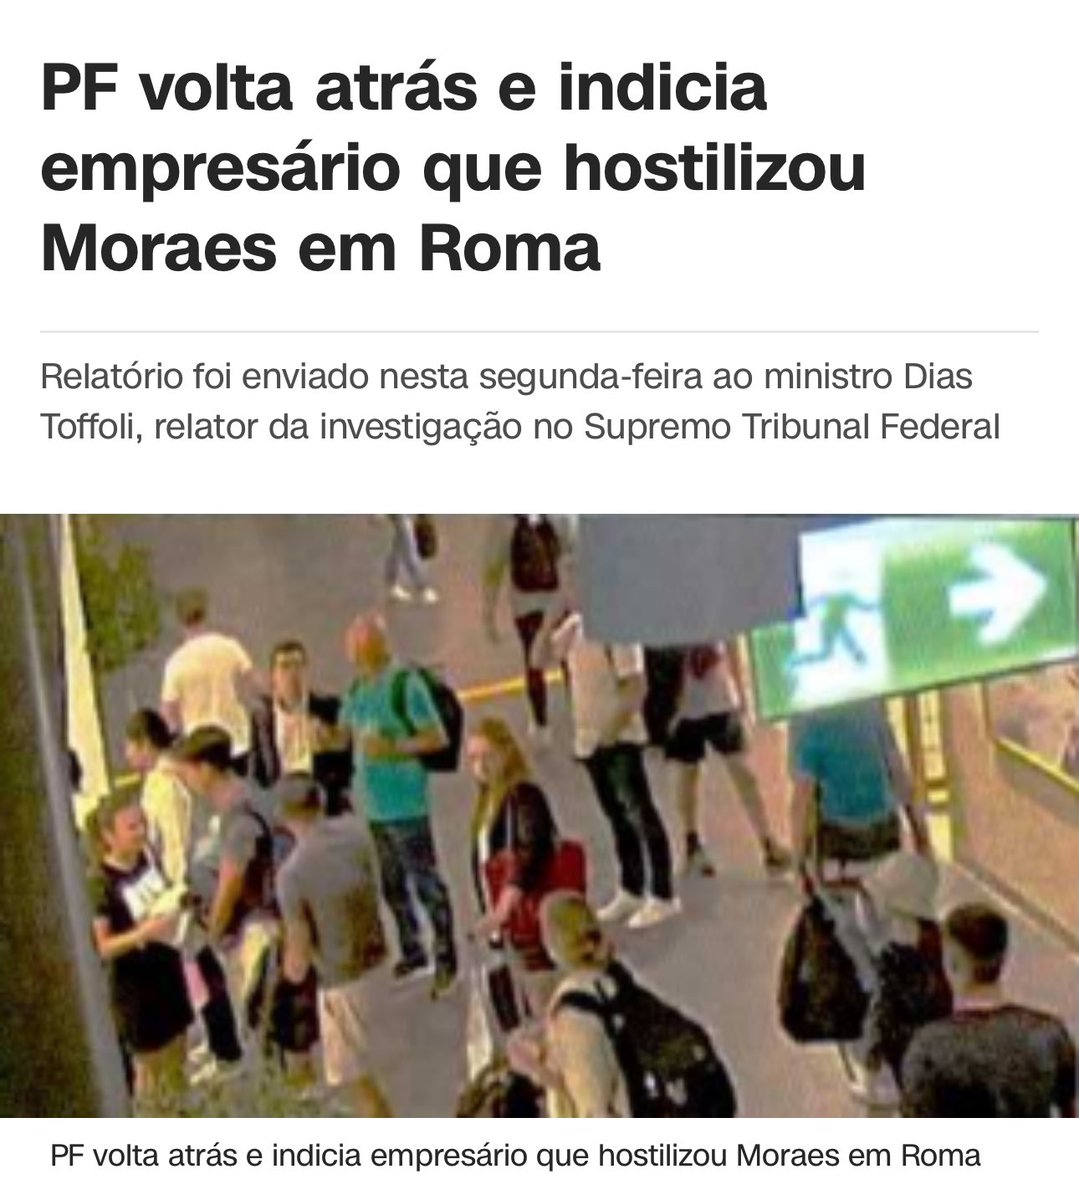 E agora temos no “Direito” o “in dubio pro Moraes” como pontuado pelo @EnioViterbo 

Cuidado você que tem alguma crítica a Moraes no seu zap zap, hein! É o maior crime que existe hoje no país. Apaguem suas figurinhas.